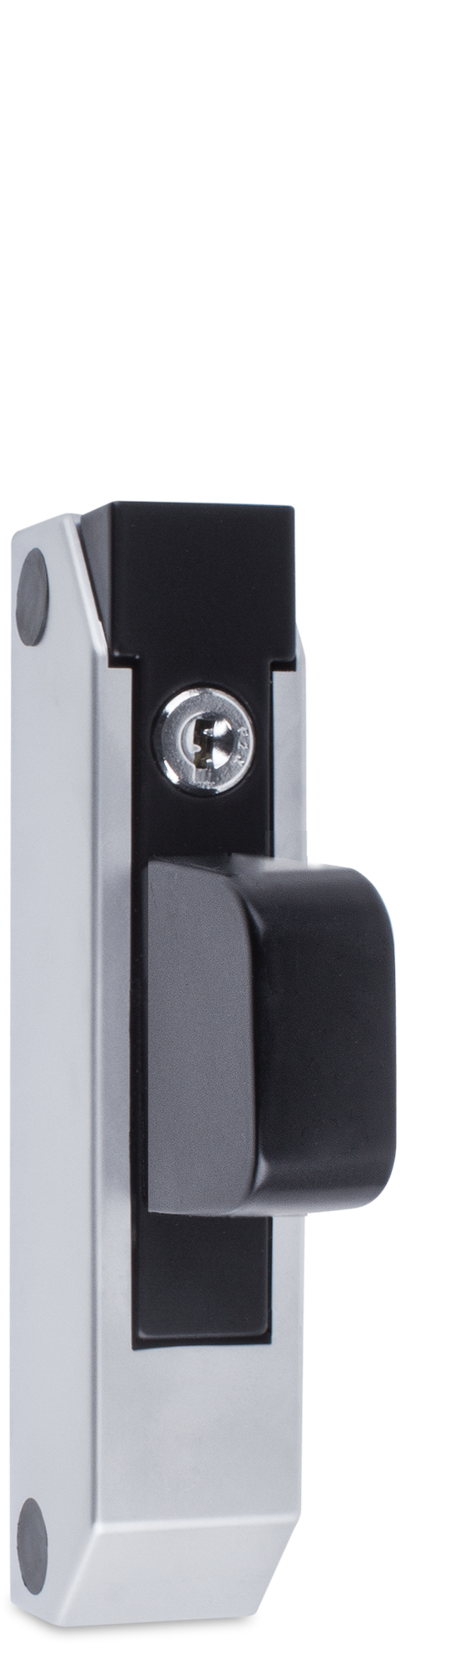 Schubladenverschluss Zink-Druckguss, EPS beschichtet schwarz RAL 9005, Kappe Kunststoff, matt verchromt, mit Zylinder, mit 2 Schlüsseln, verschiedenschließend, seitliche Montage, Höhe Halterung 29 mm